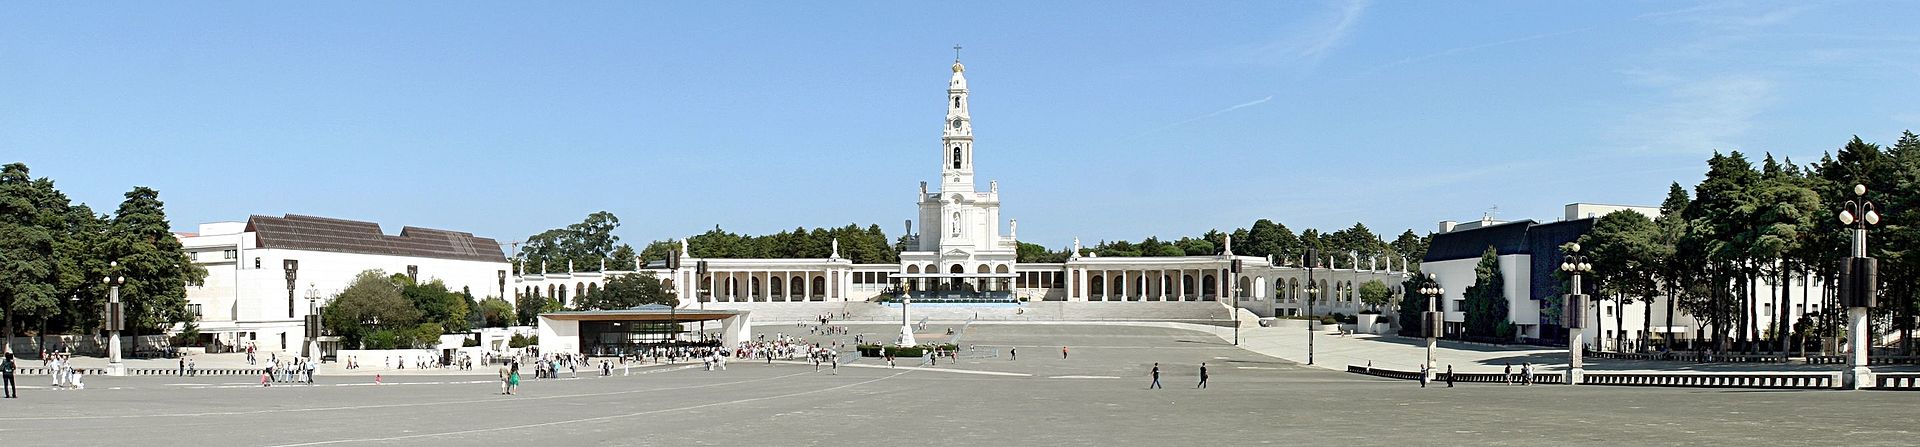 Santuário de Fátima com a Capelinha das Aparições o Monumento ao Coração de Jesus e a Basílica de Nossa Senhora do Rosário